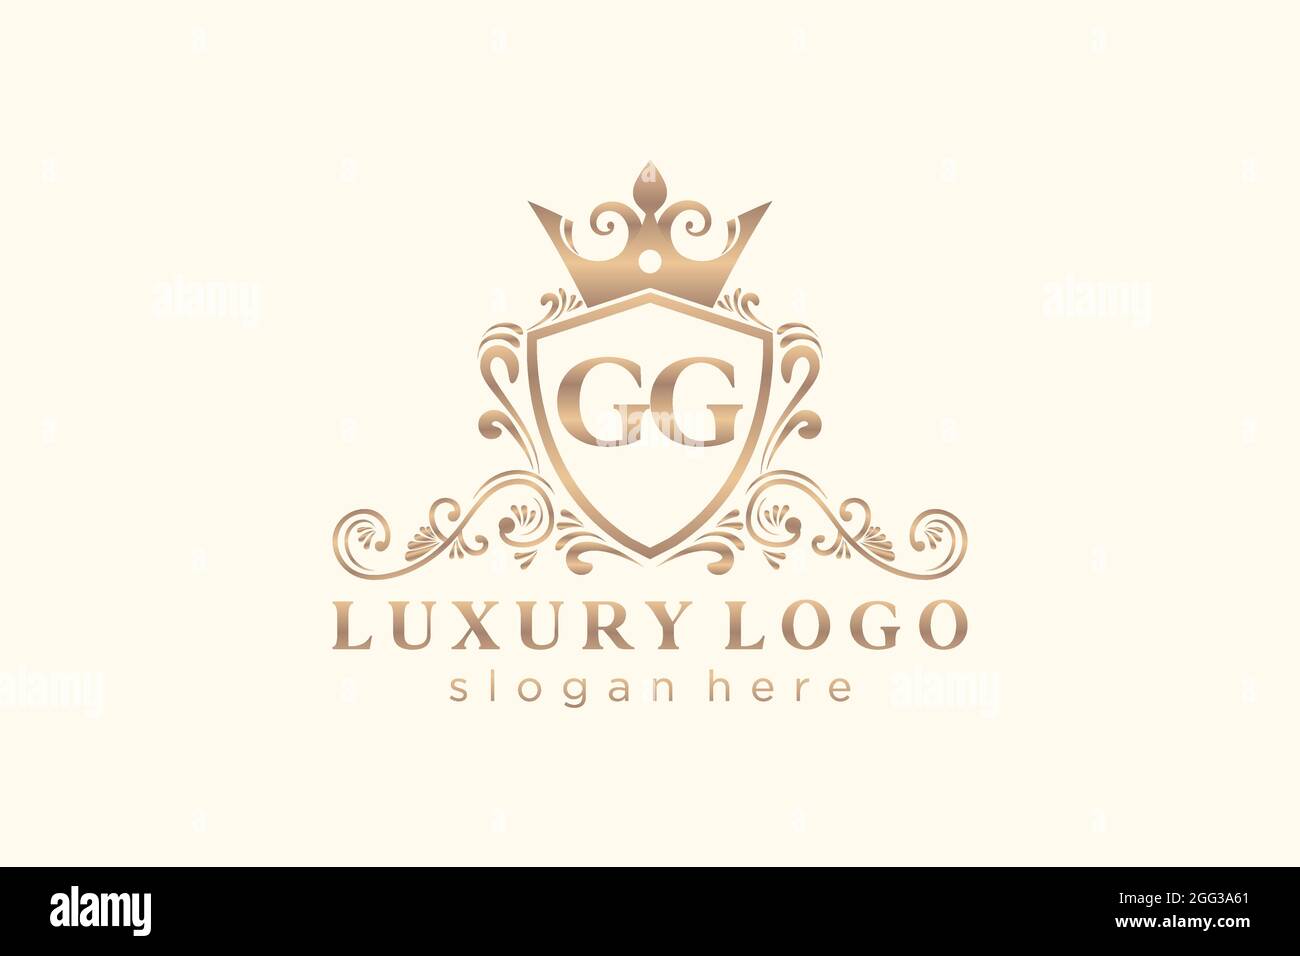 GG Letter Royal Luxury Logo Vorlage in Vektorgrafik für Restaurant, Royalty, Boutique, Cafe, Hotel, Heraldisch, Schmuck, Mode und andere Vektor illustrr Stock Vektor